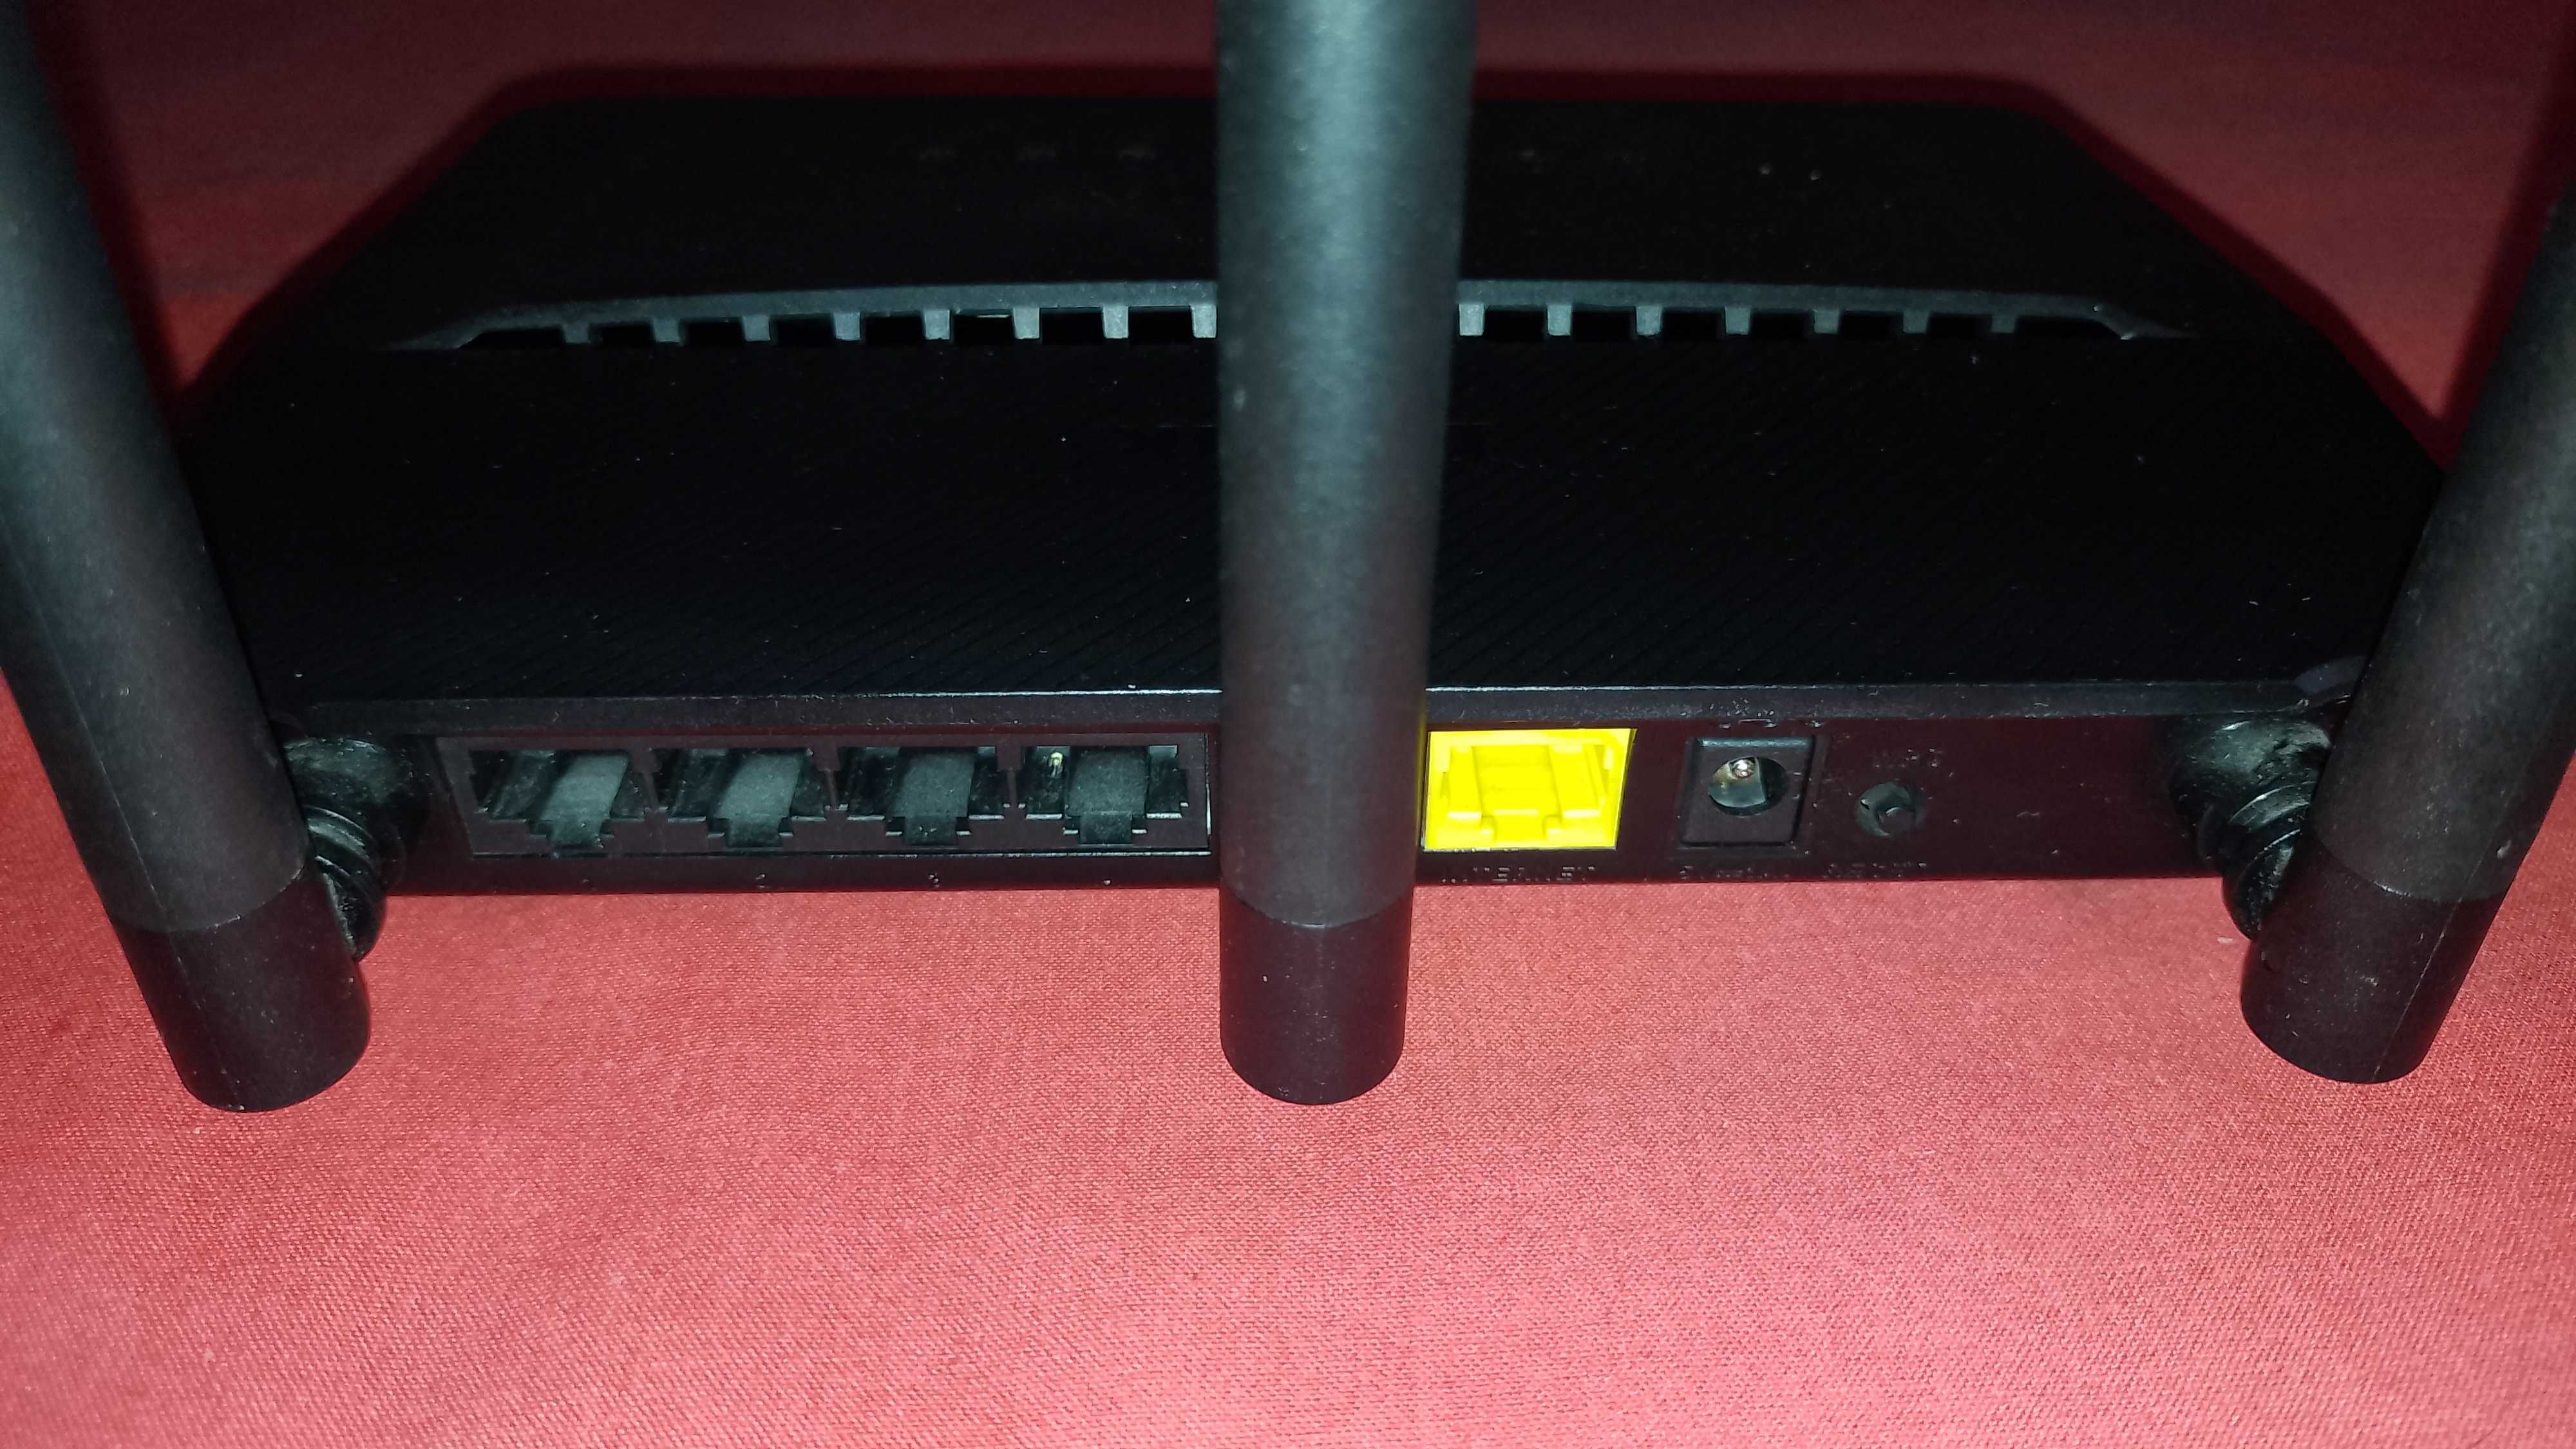 WiFi Рутер D-Link DIR-809 Dual Band AC750